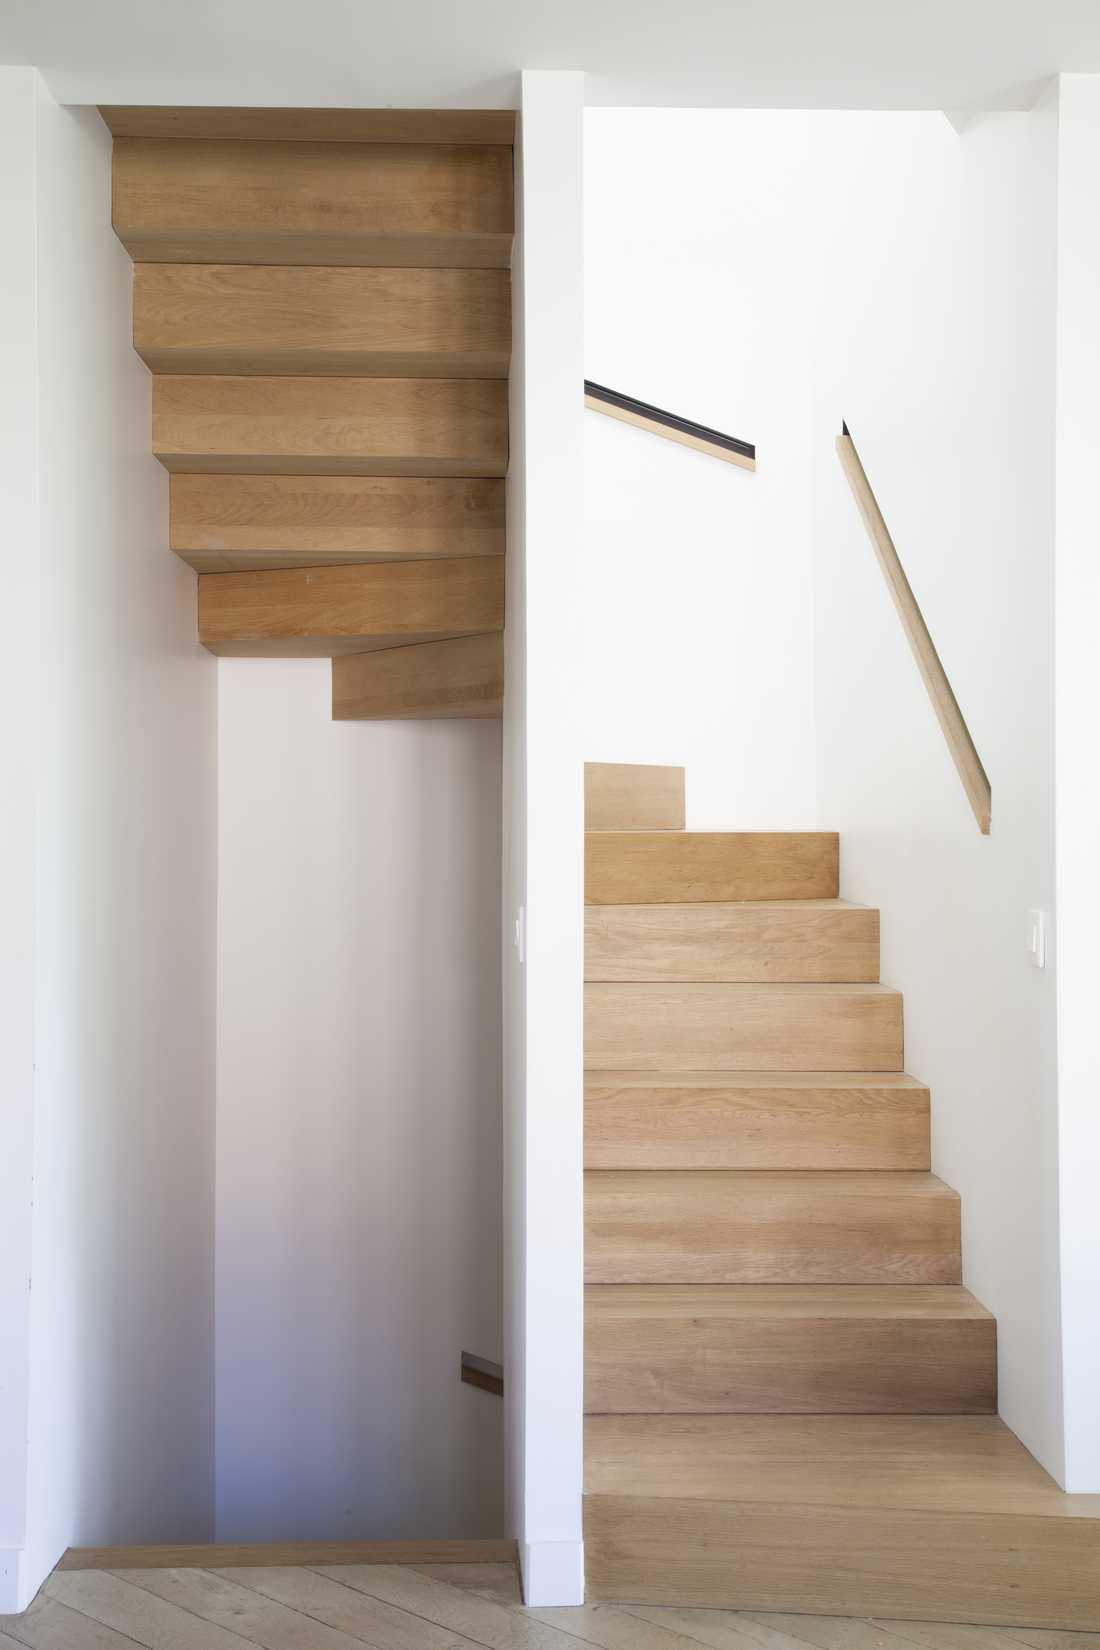 Escalier sur mesure aménagé par un architecte dplg